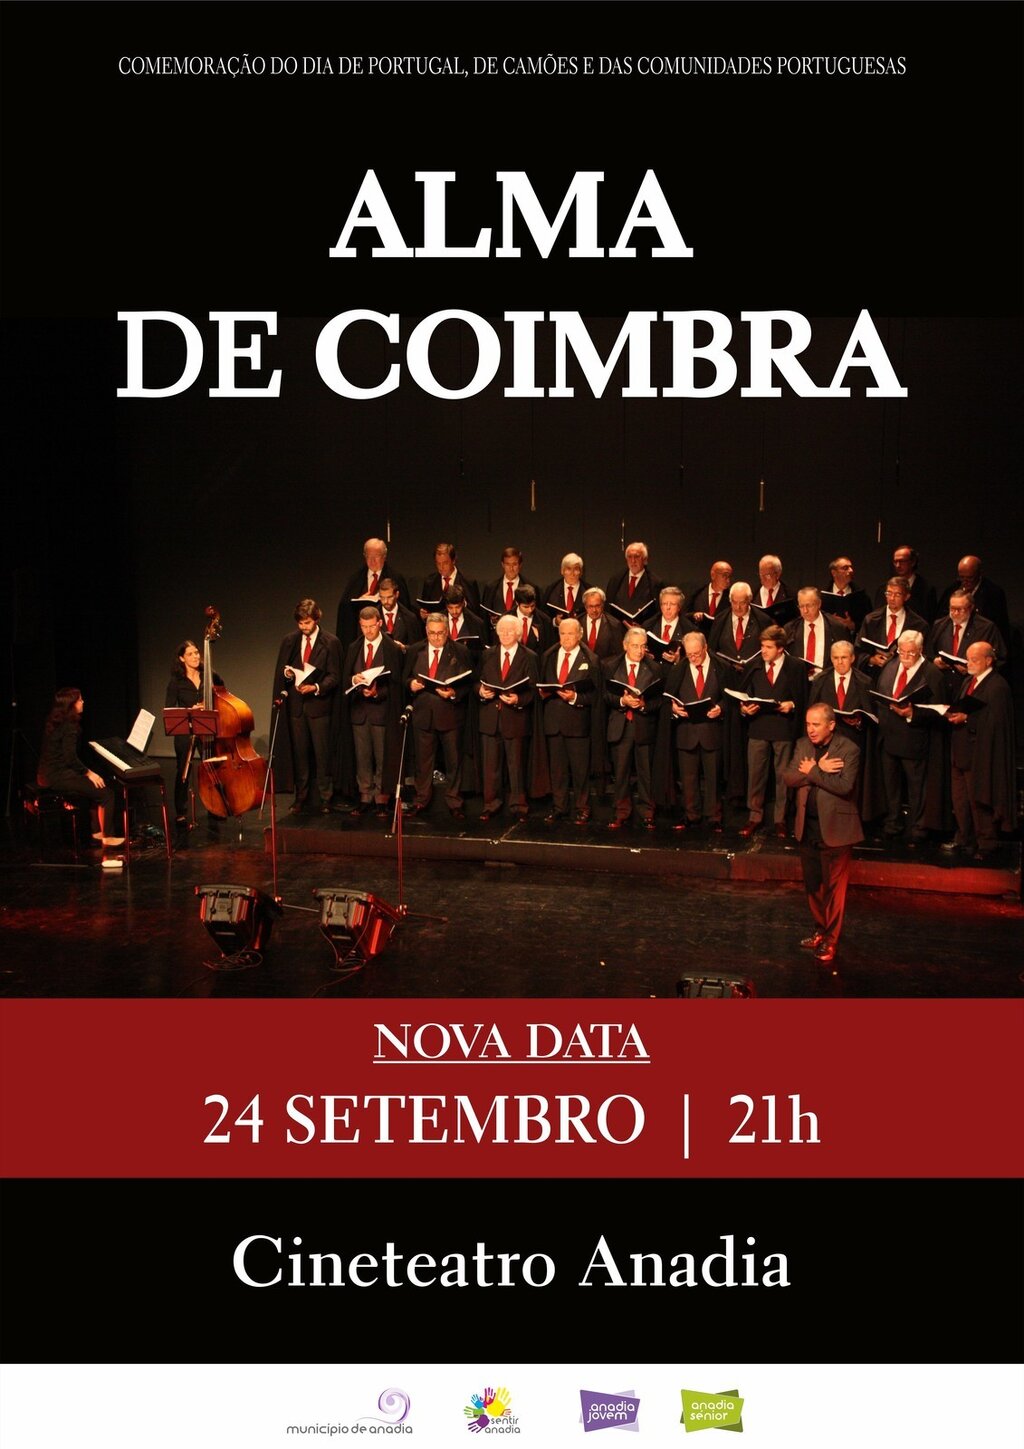 Alma de Coimbra (concerto) - NOVA DATA